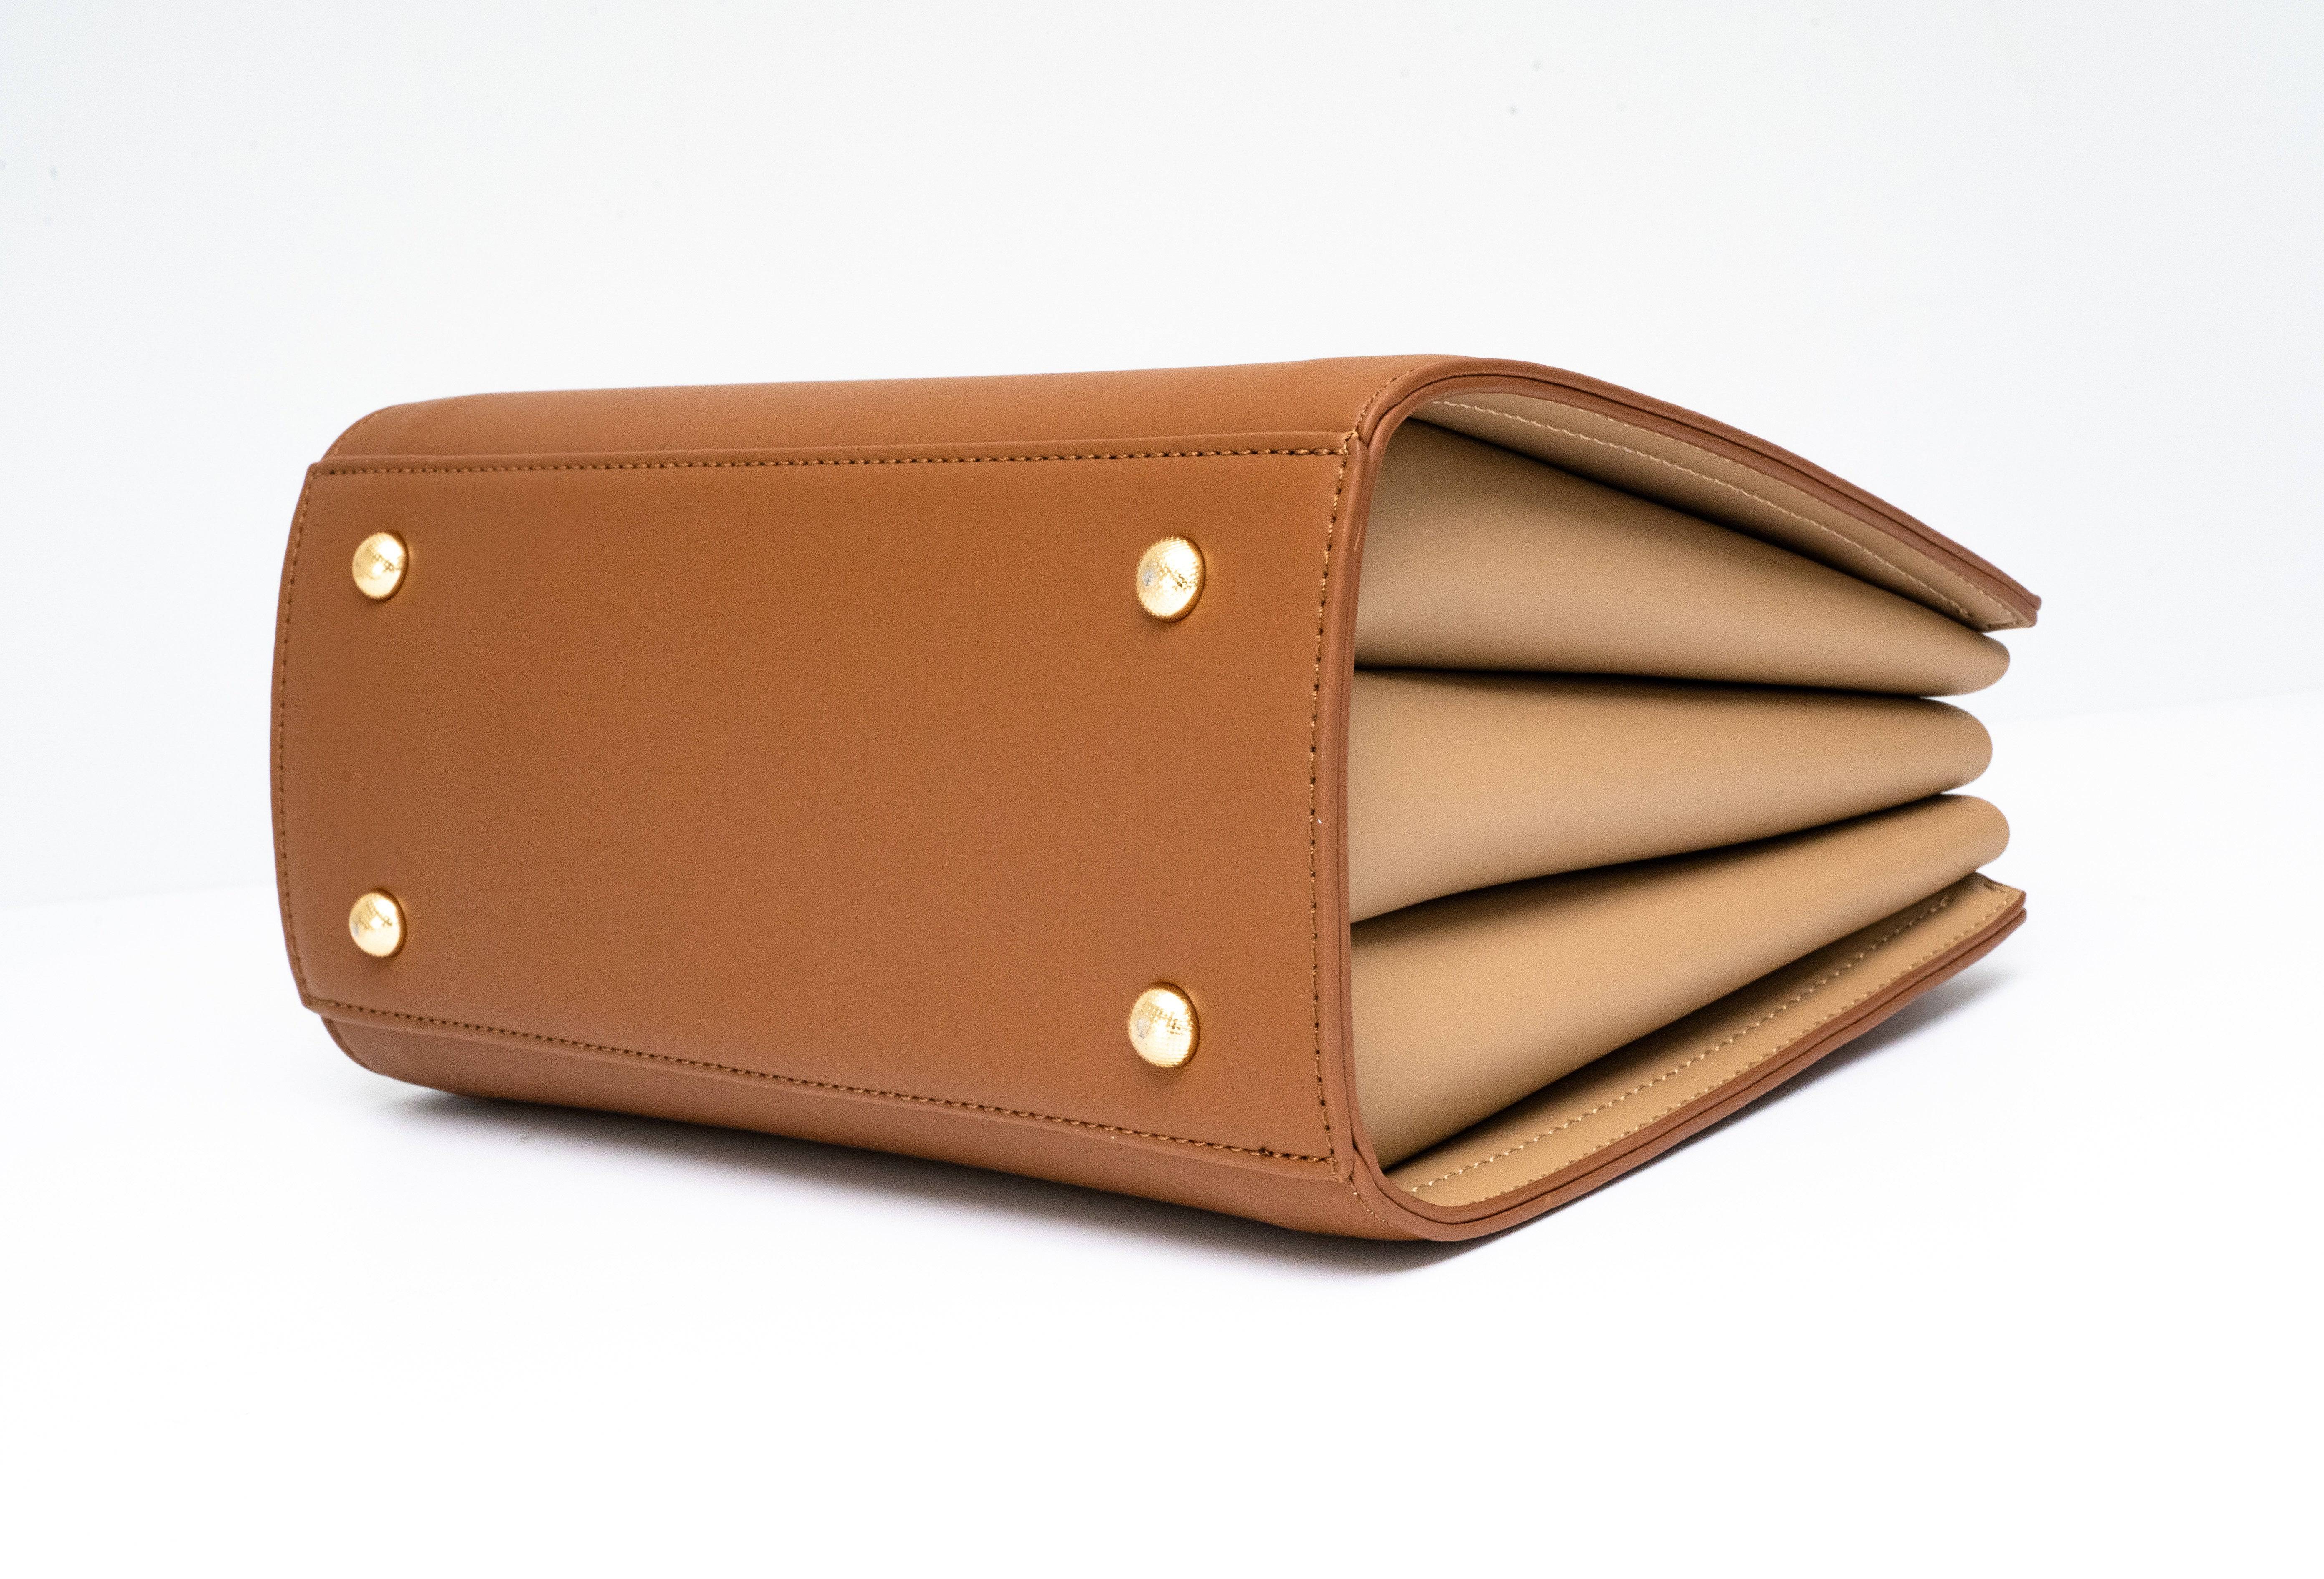 حقيبة يد نسائية باللون البنى مربعة الشكل بحجم كبير ومساحة داخلية كبيرة. - KSA